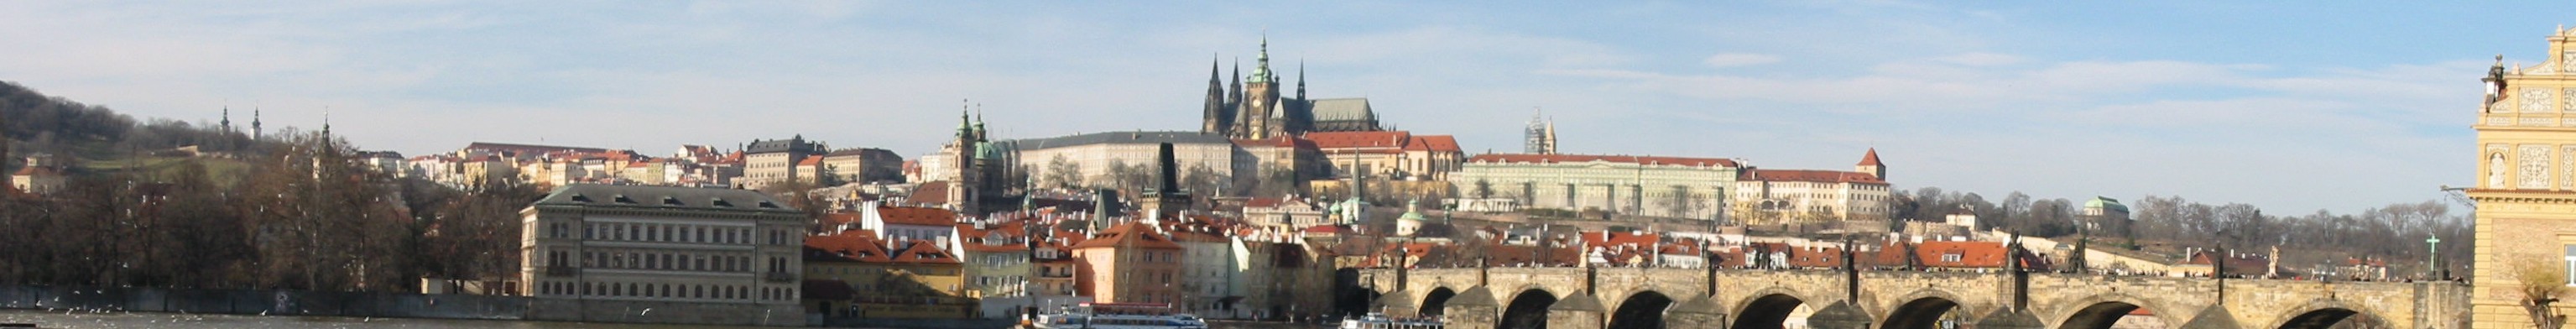 Praha hrad